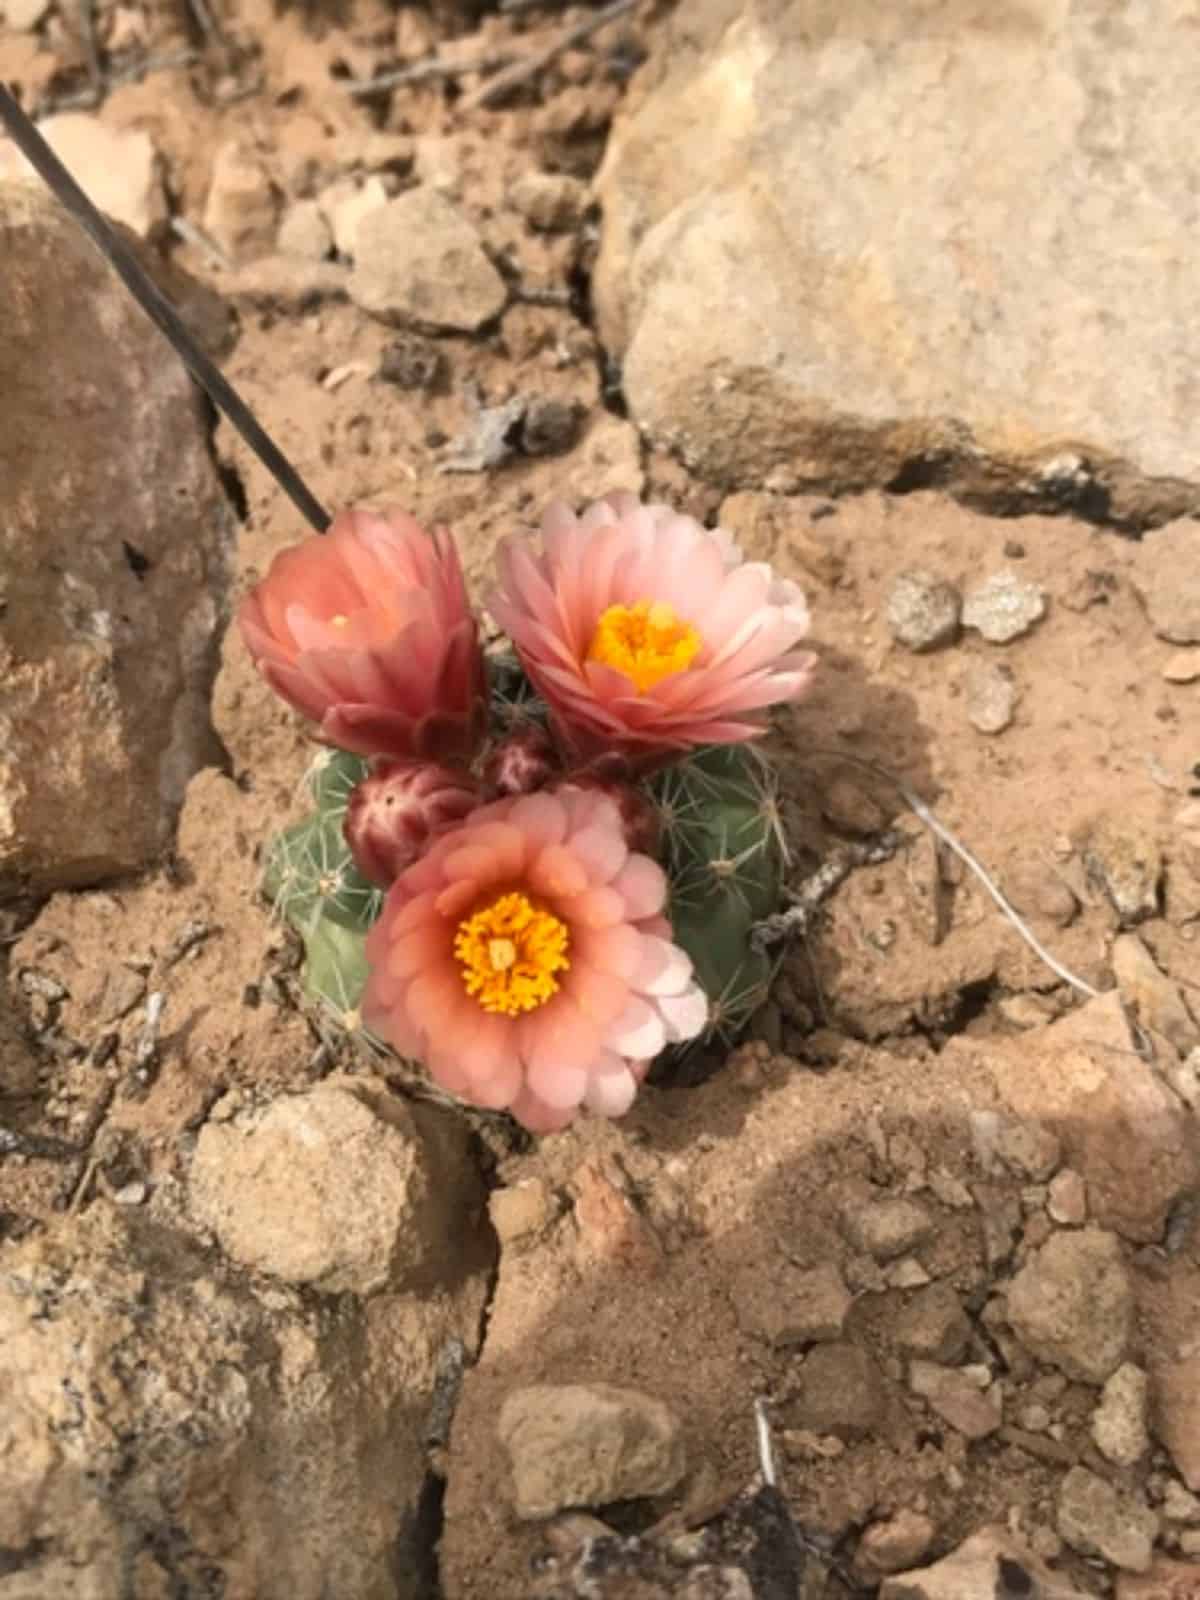 Flowering Pediocactus despainii - San Rafael cactus